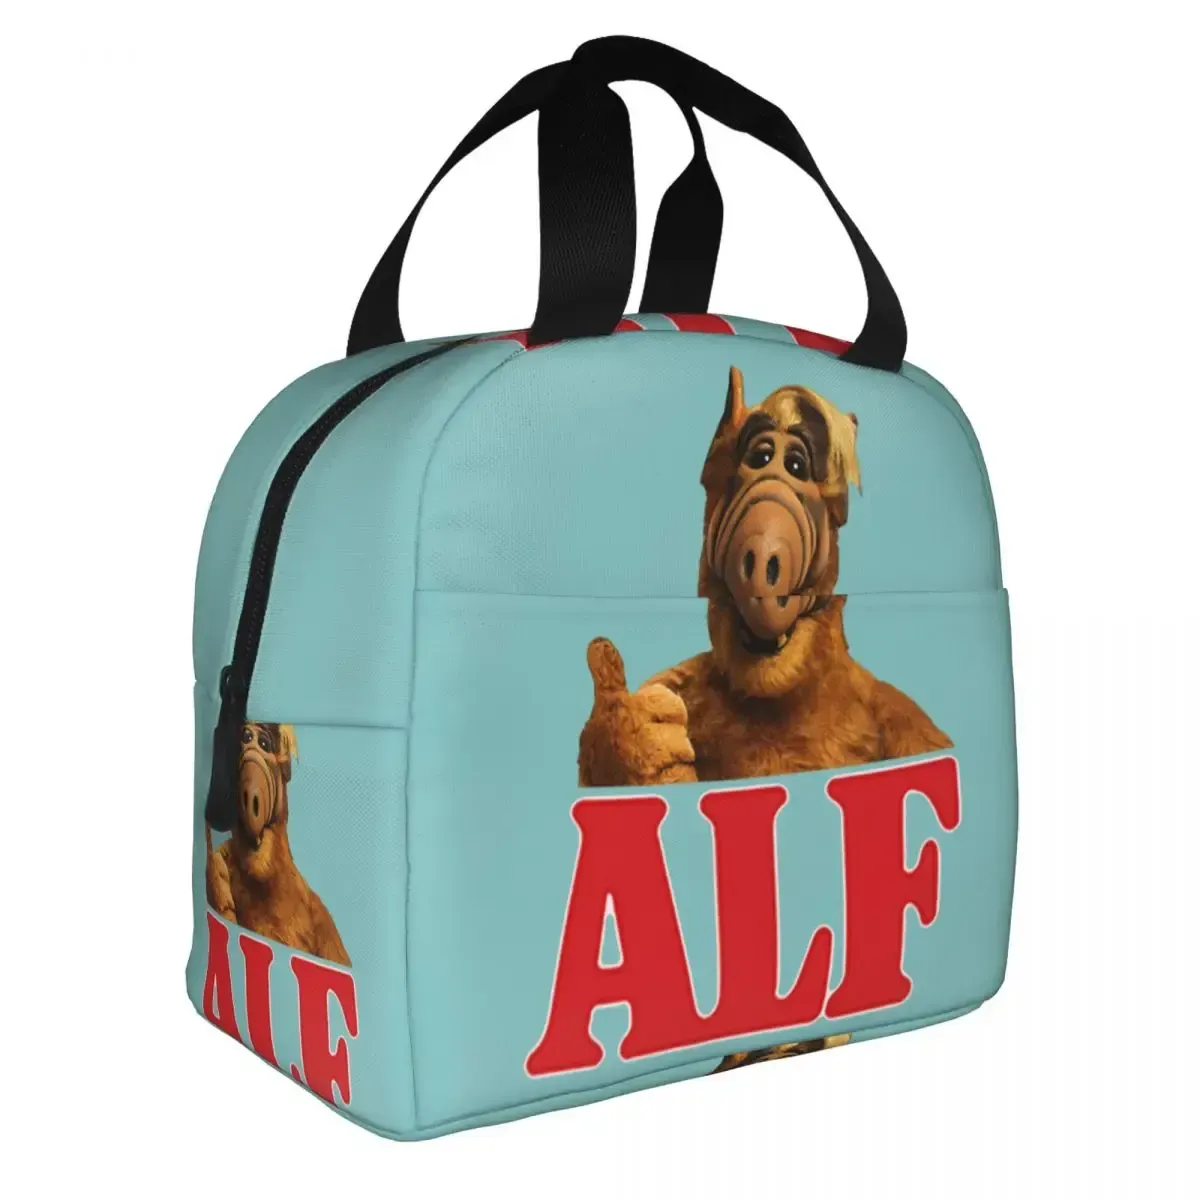 Linhas de linha de monofilamento Alf Thumbs Up Lunch Bag Cooler Thermal Insated Alien Life Form Box para mulheres crianças escola trabalho piquenique comida dhz0d